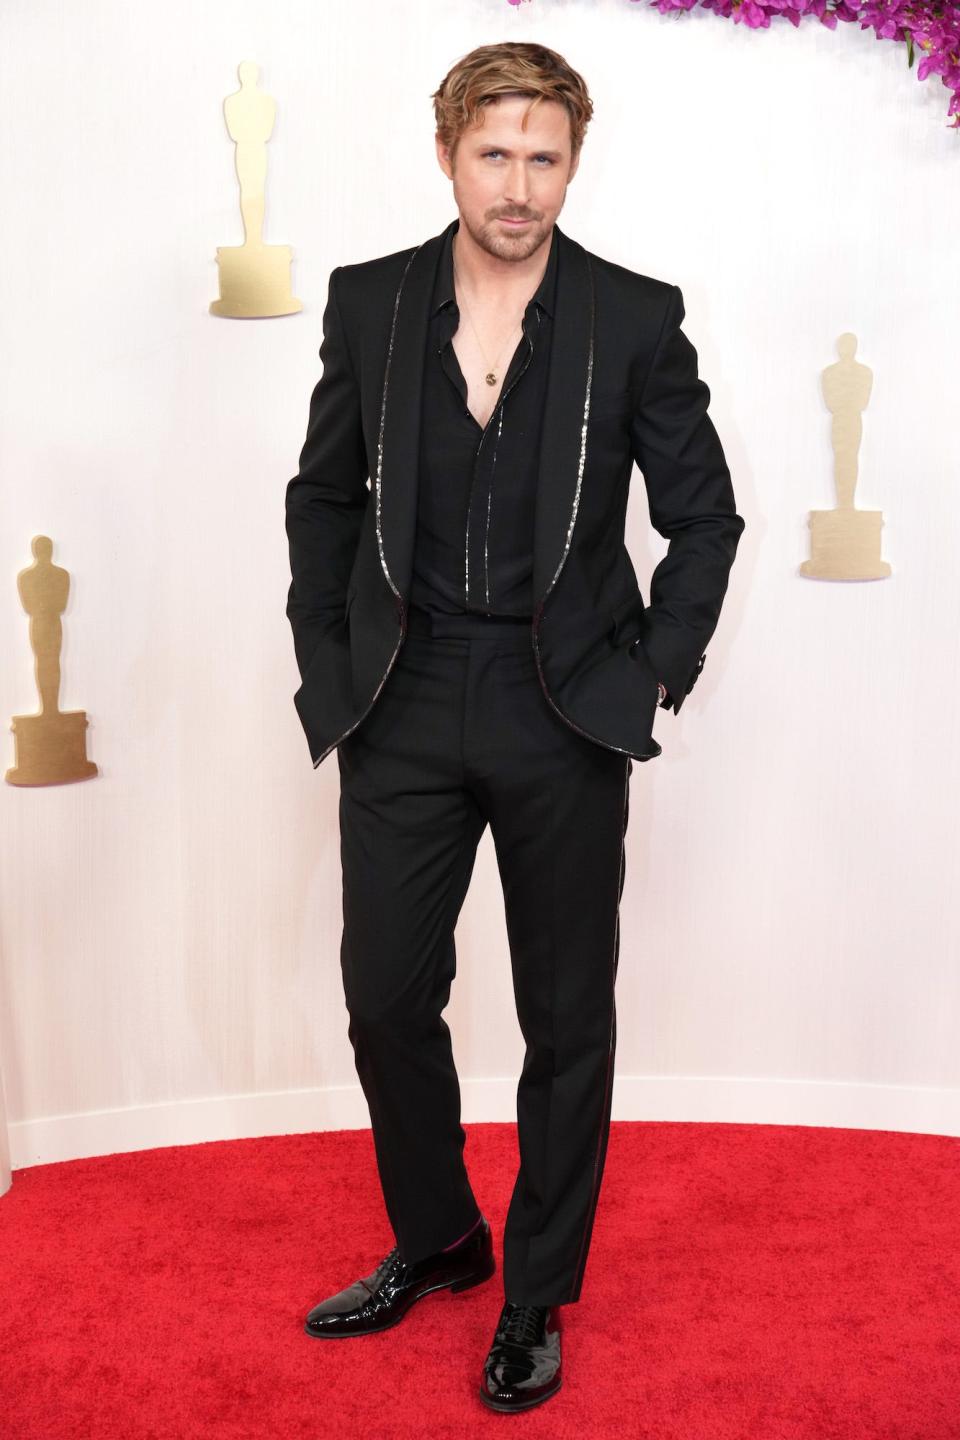 Ryan Gosling in a black suit.